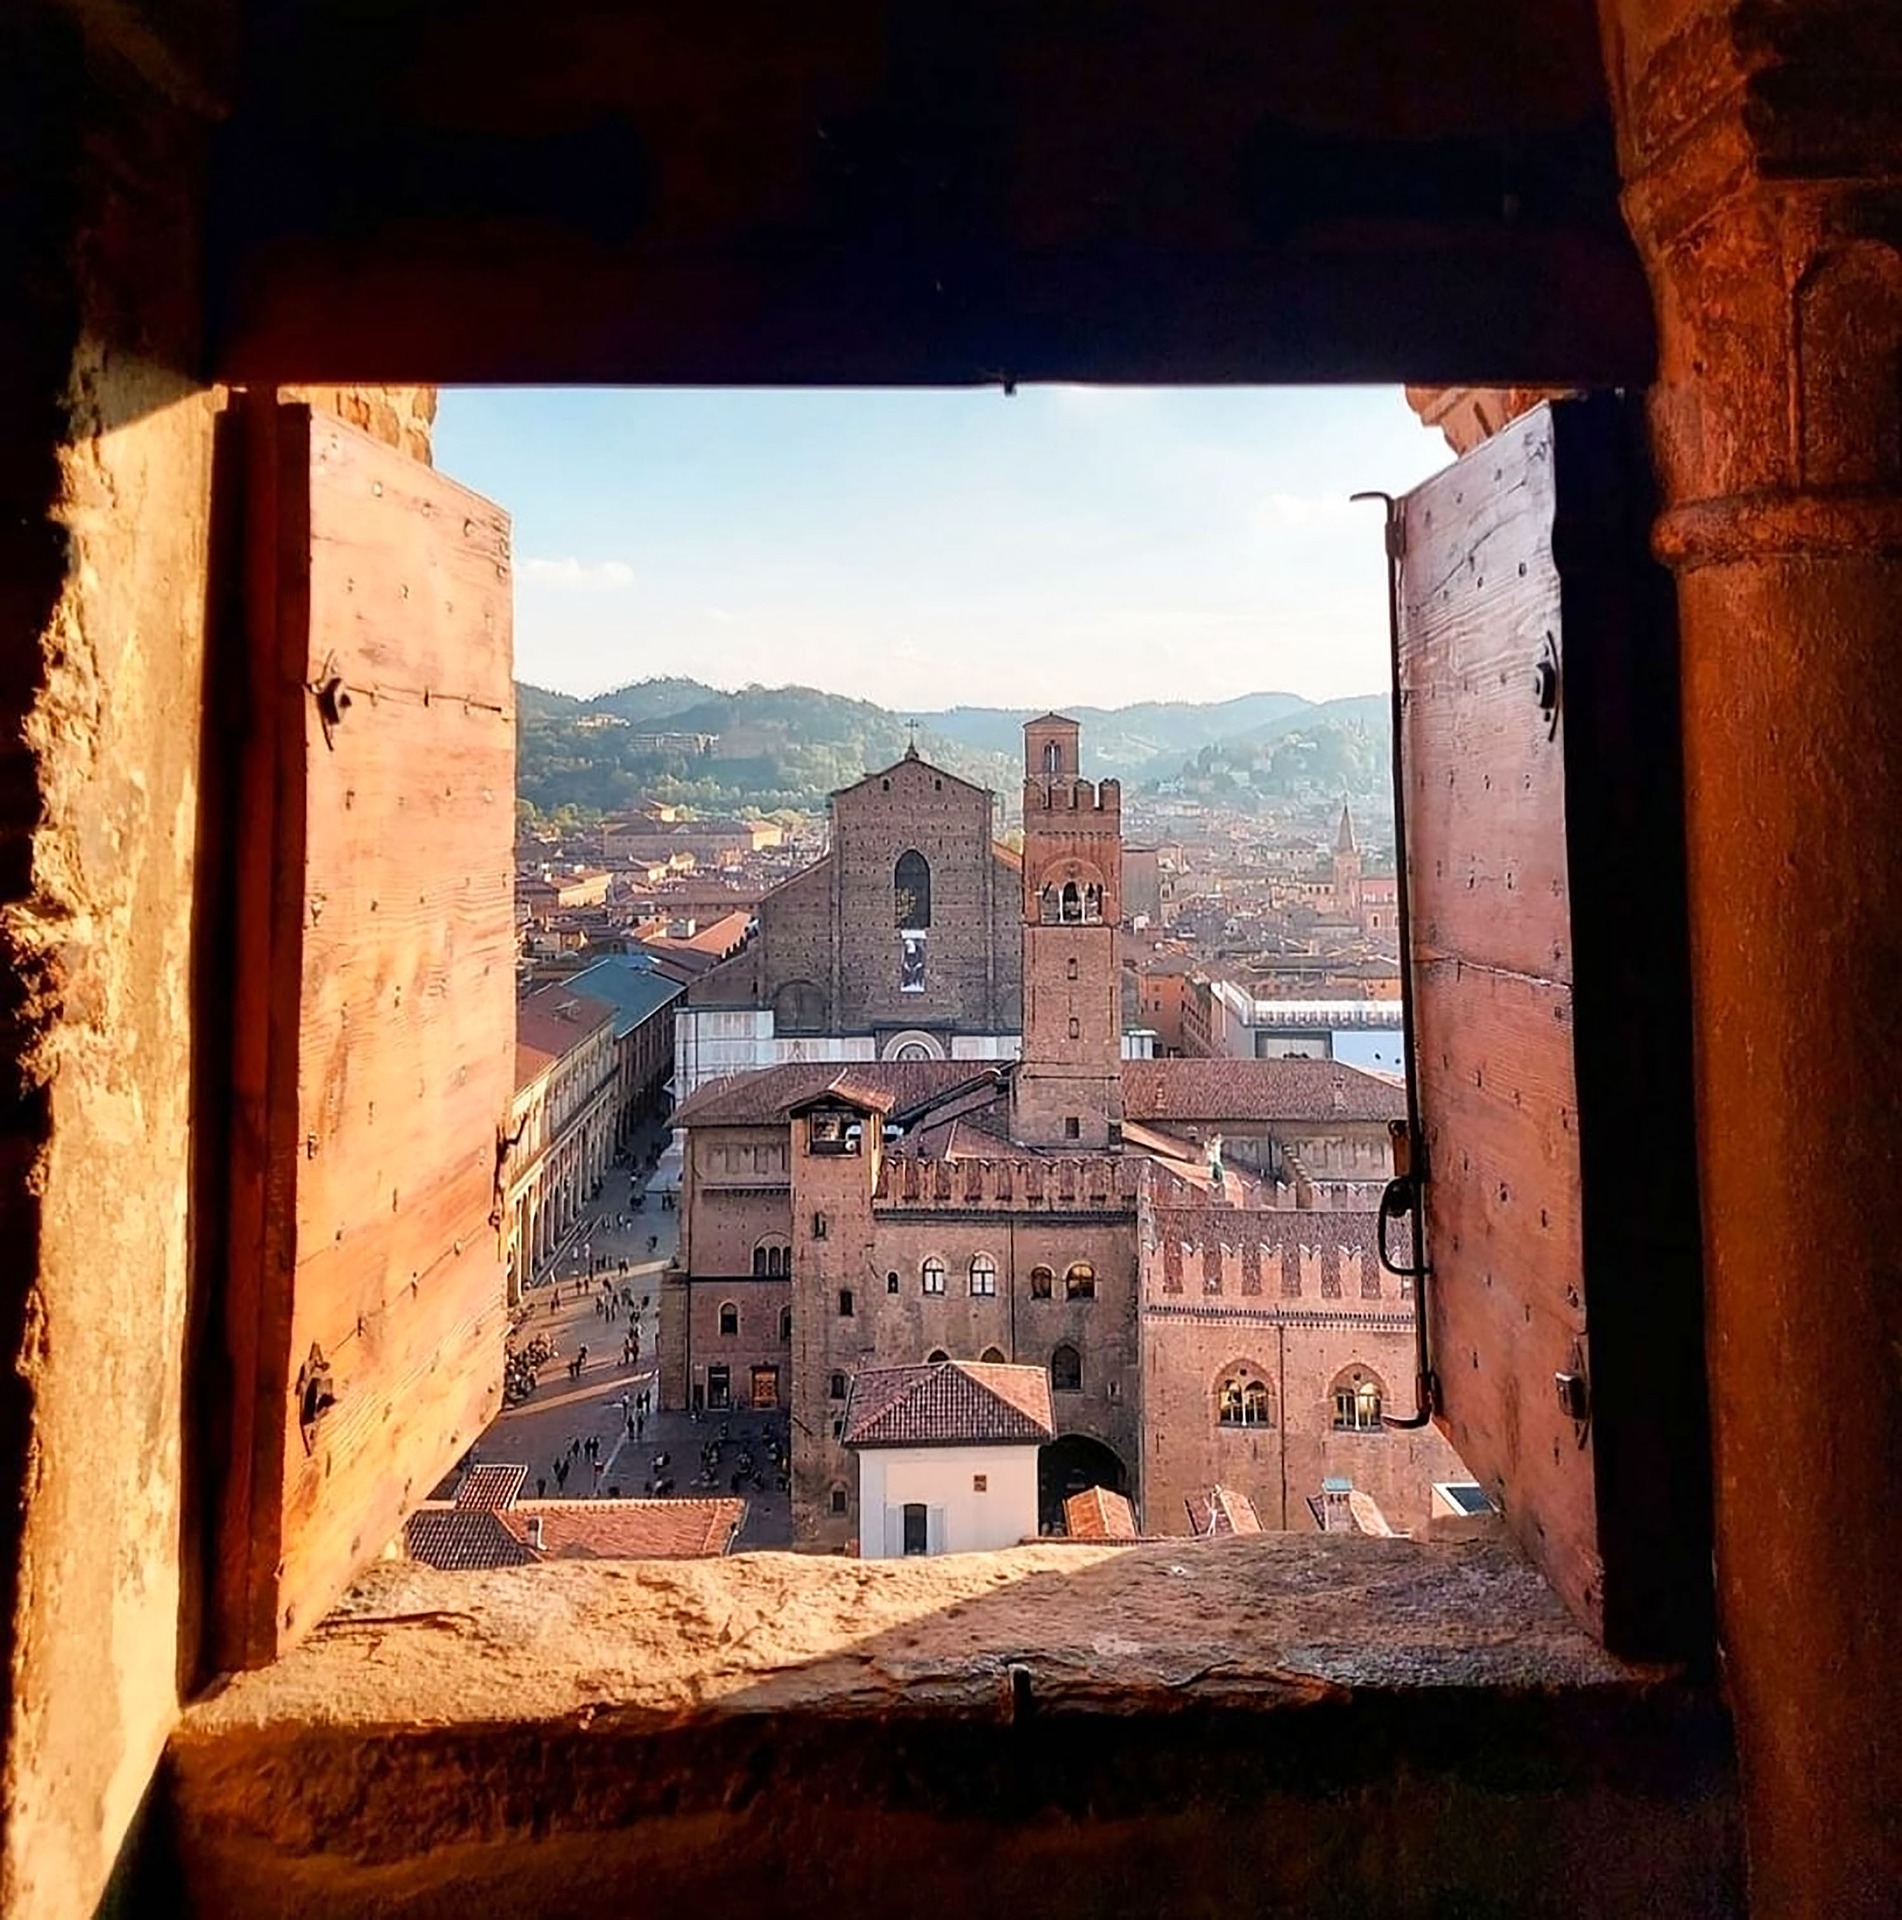 Bologna finestrella